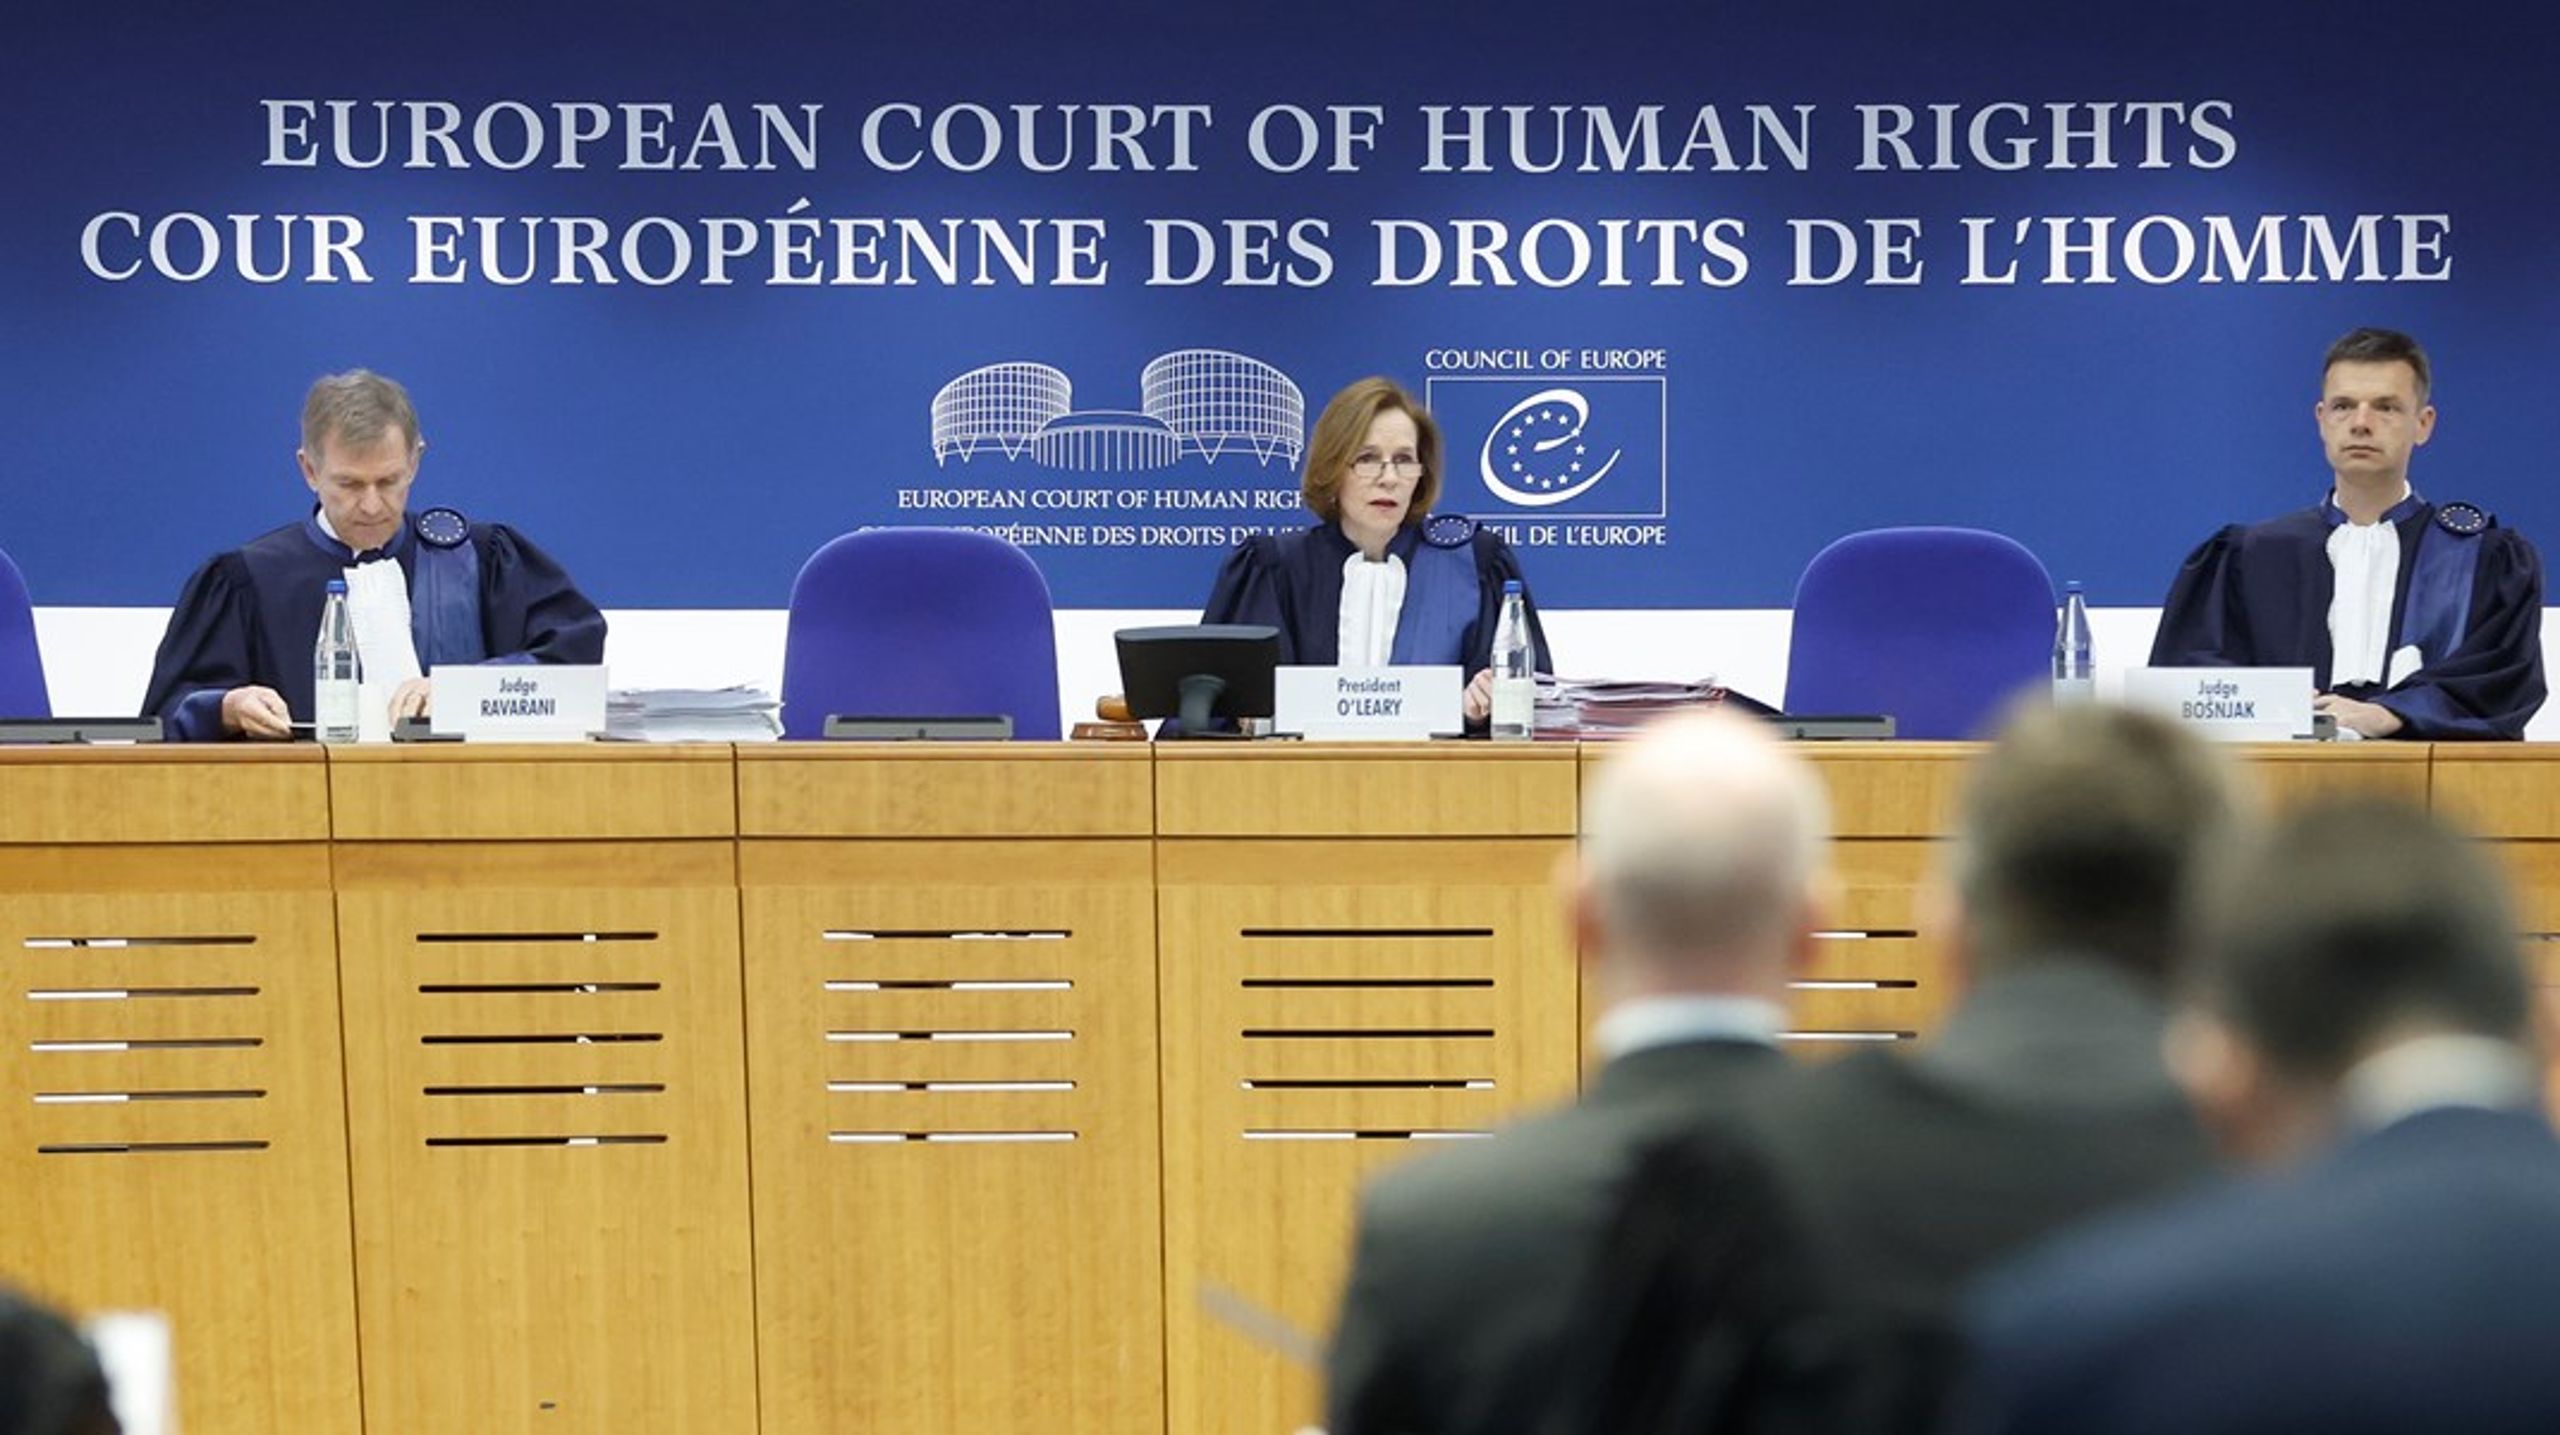 Den Europæiske Menneskerettighedsdomstol i Strasbourg gav torsdag 15. februar medhold i Danmarks udvisning af seks personer. Arkivfoto.